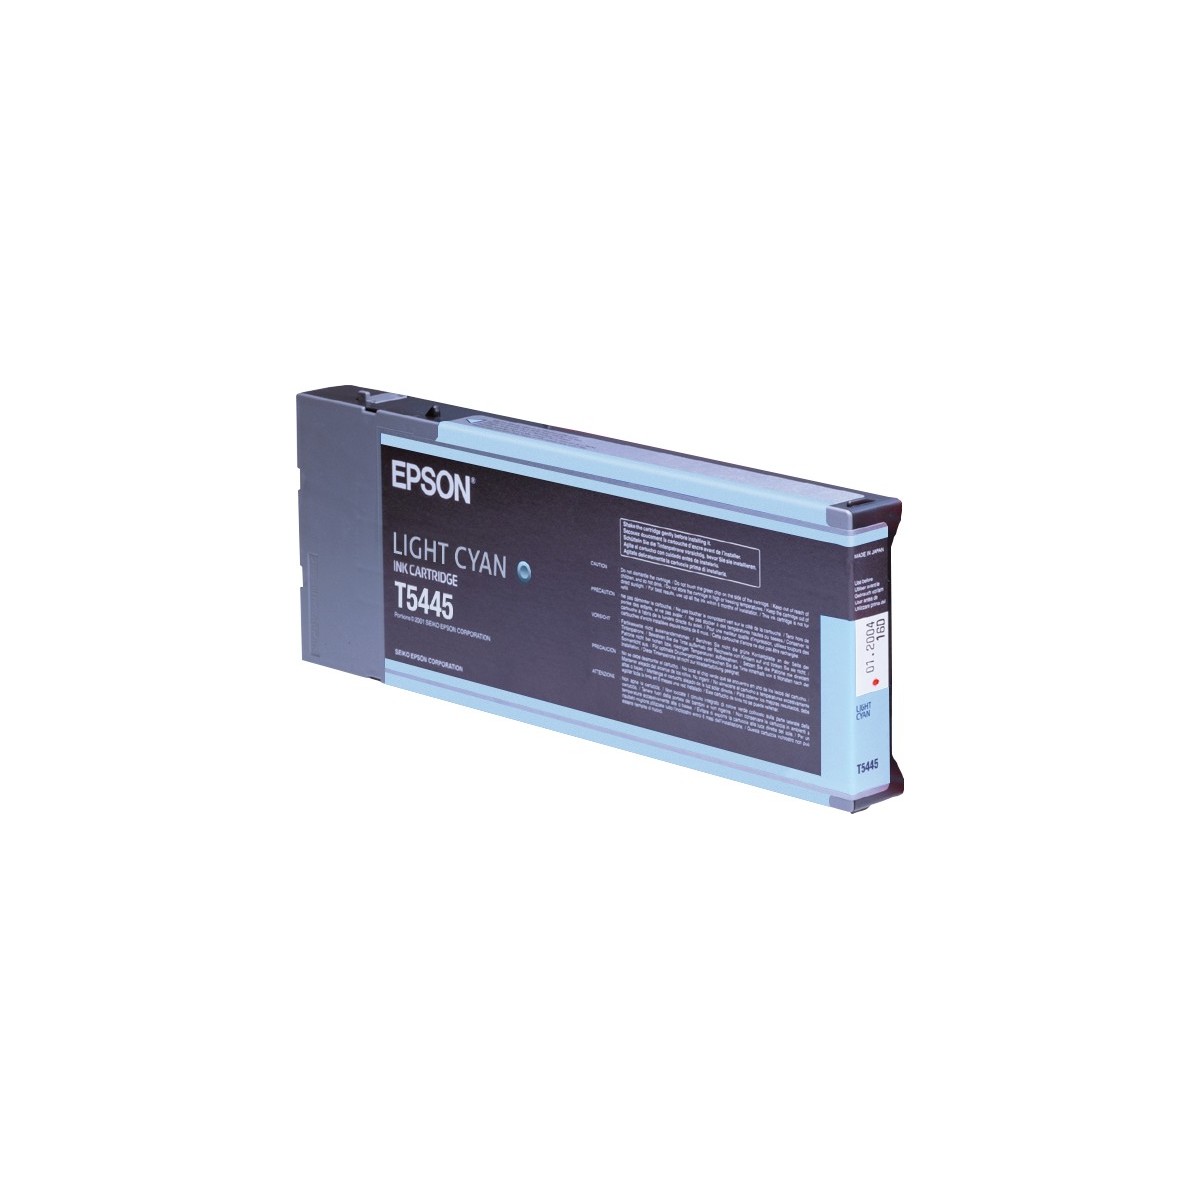 Epson Singlepack Light Cyan T544500 220 ml - Pigment-based ink - 220 ml - 1 pc(s)